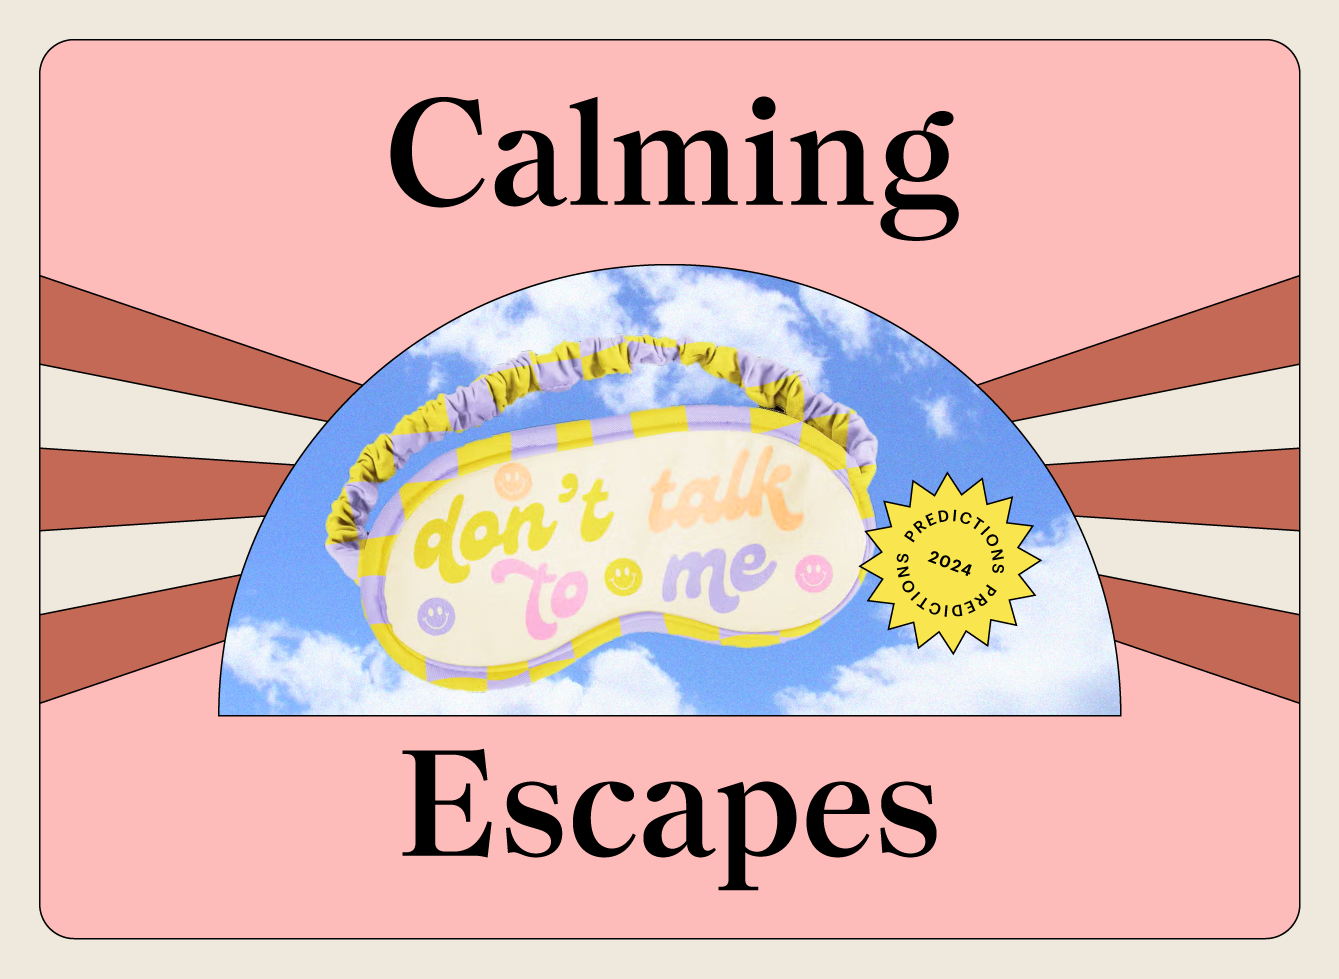 Calming_escapes_1-1.png